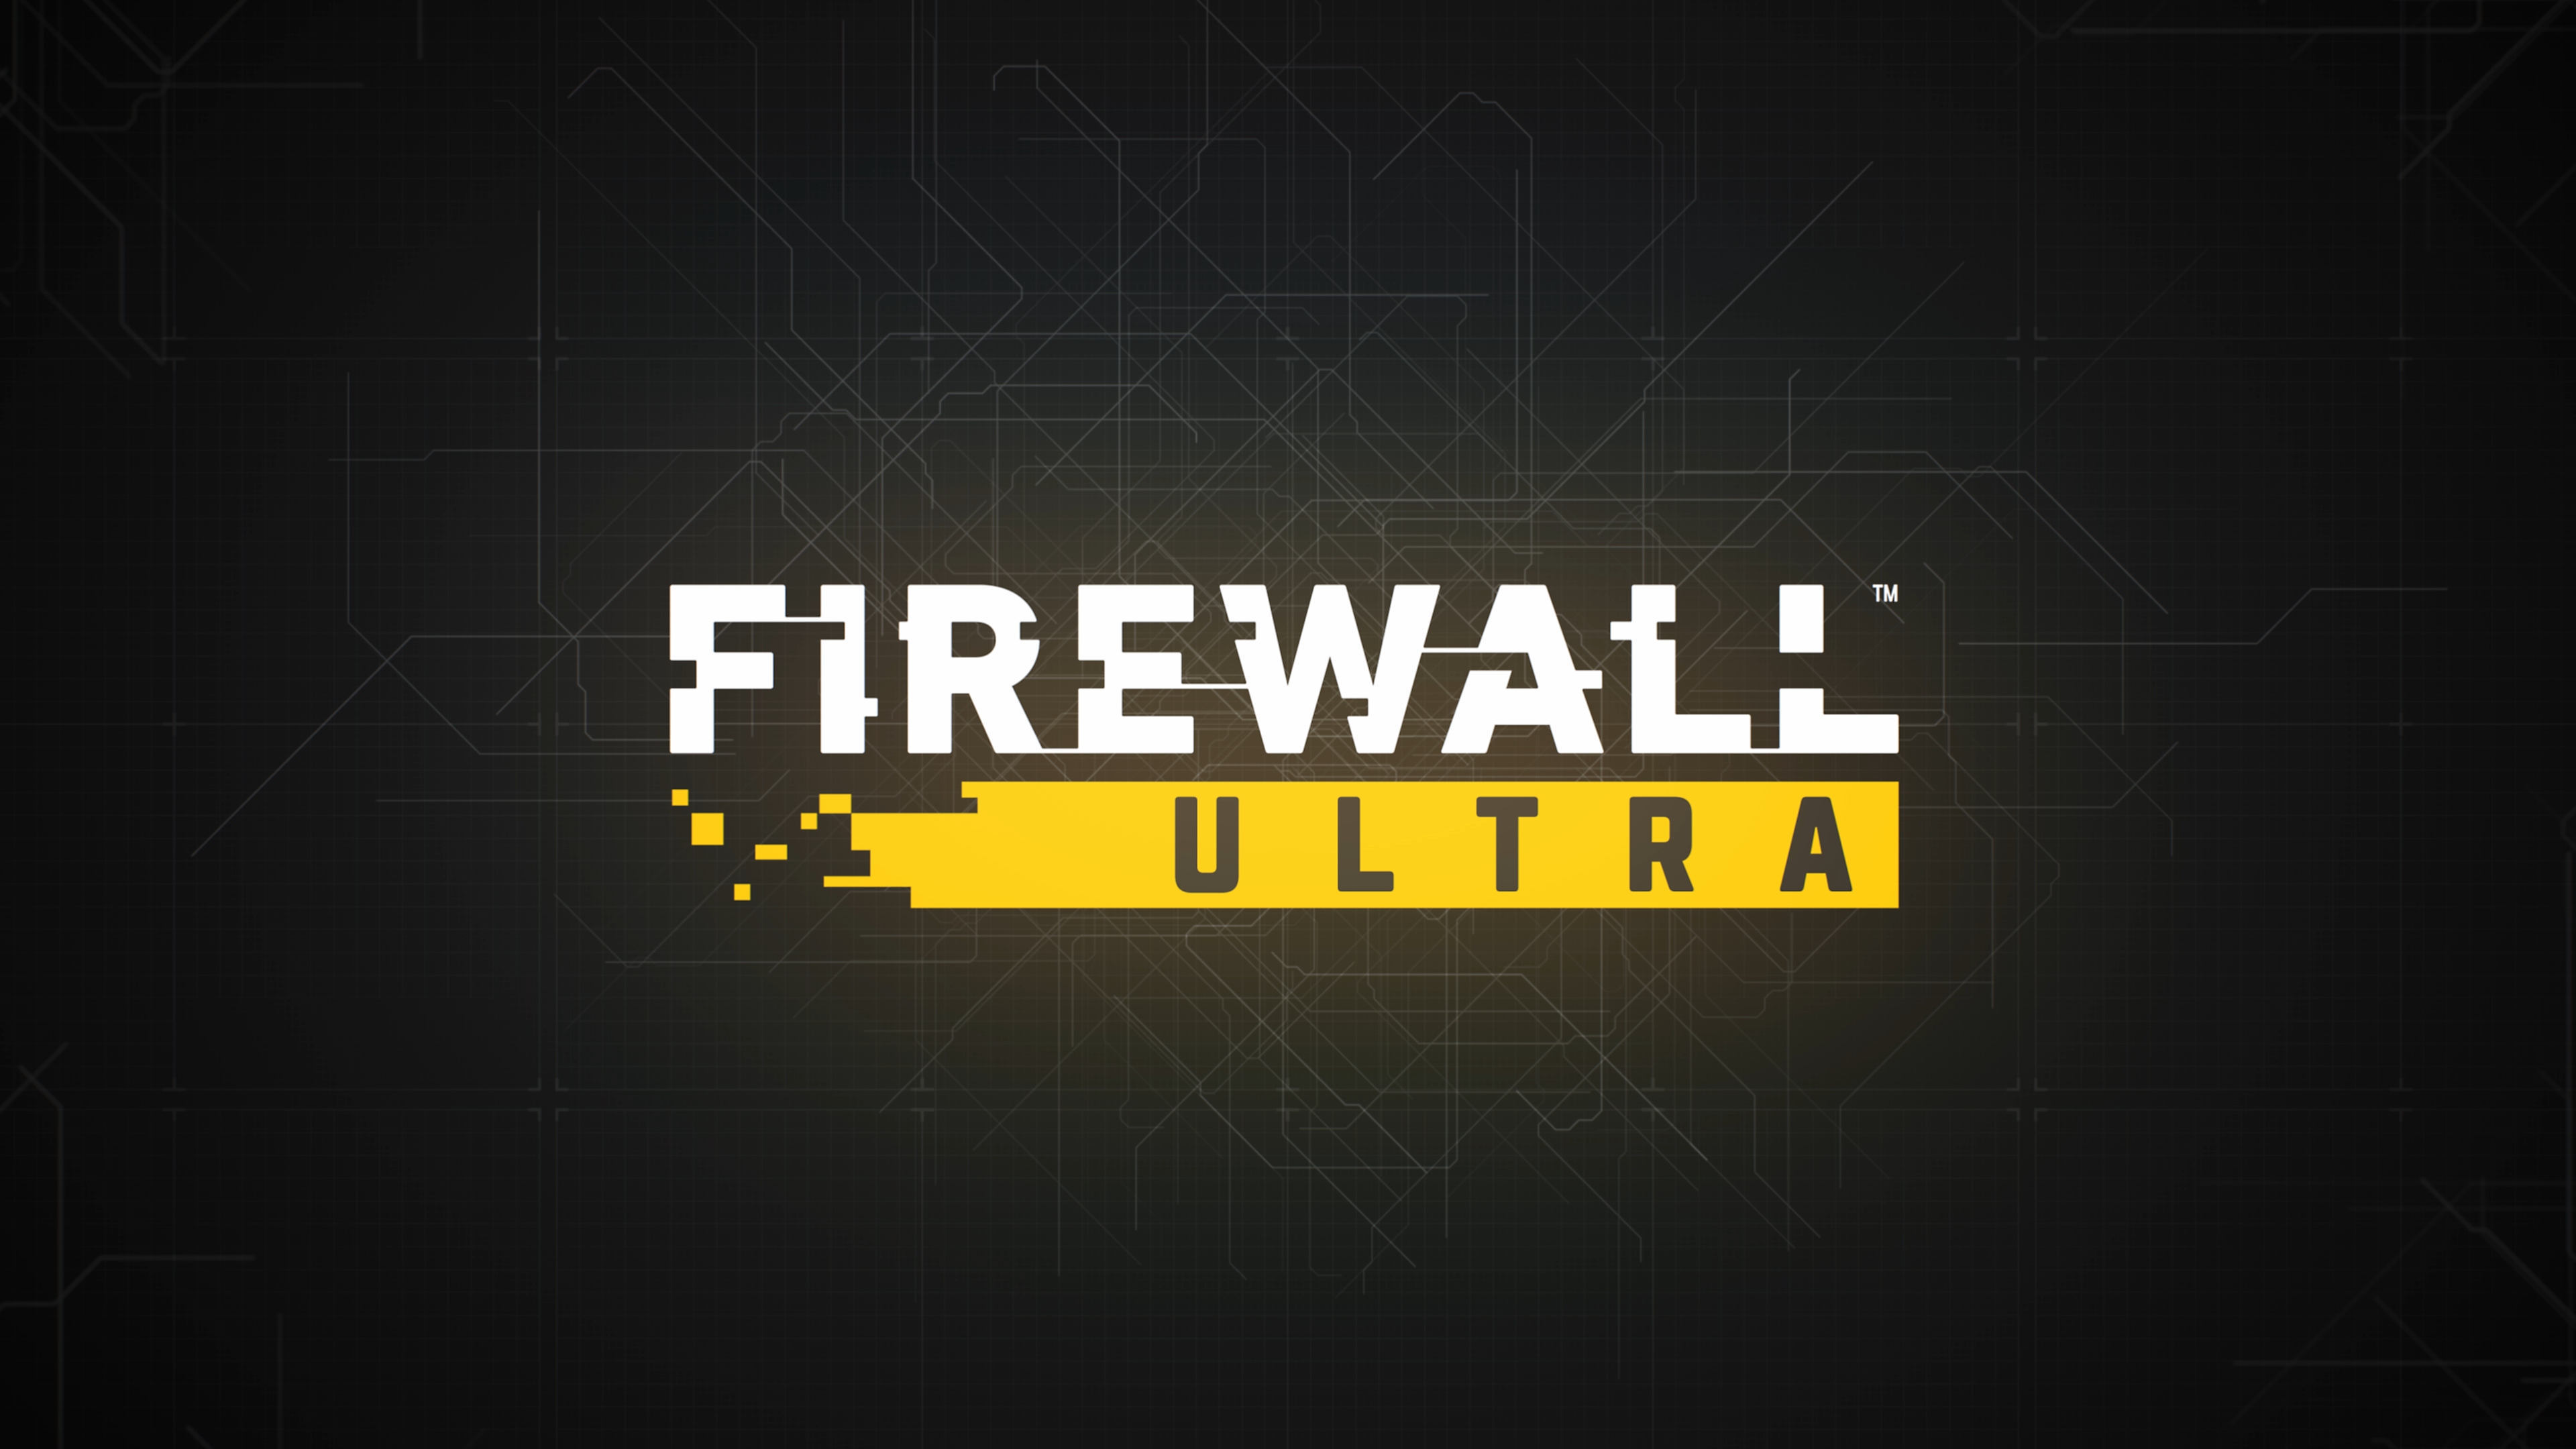 الصورة الفنية الأساسية للعبة firewall ultra